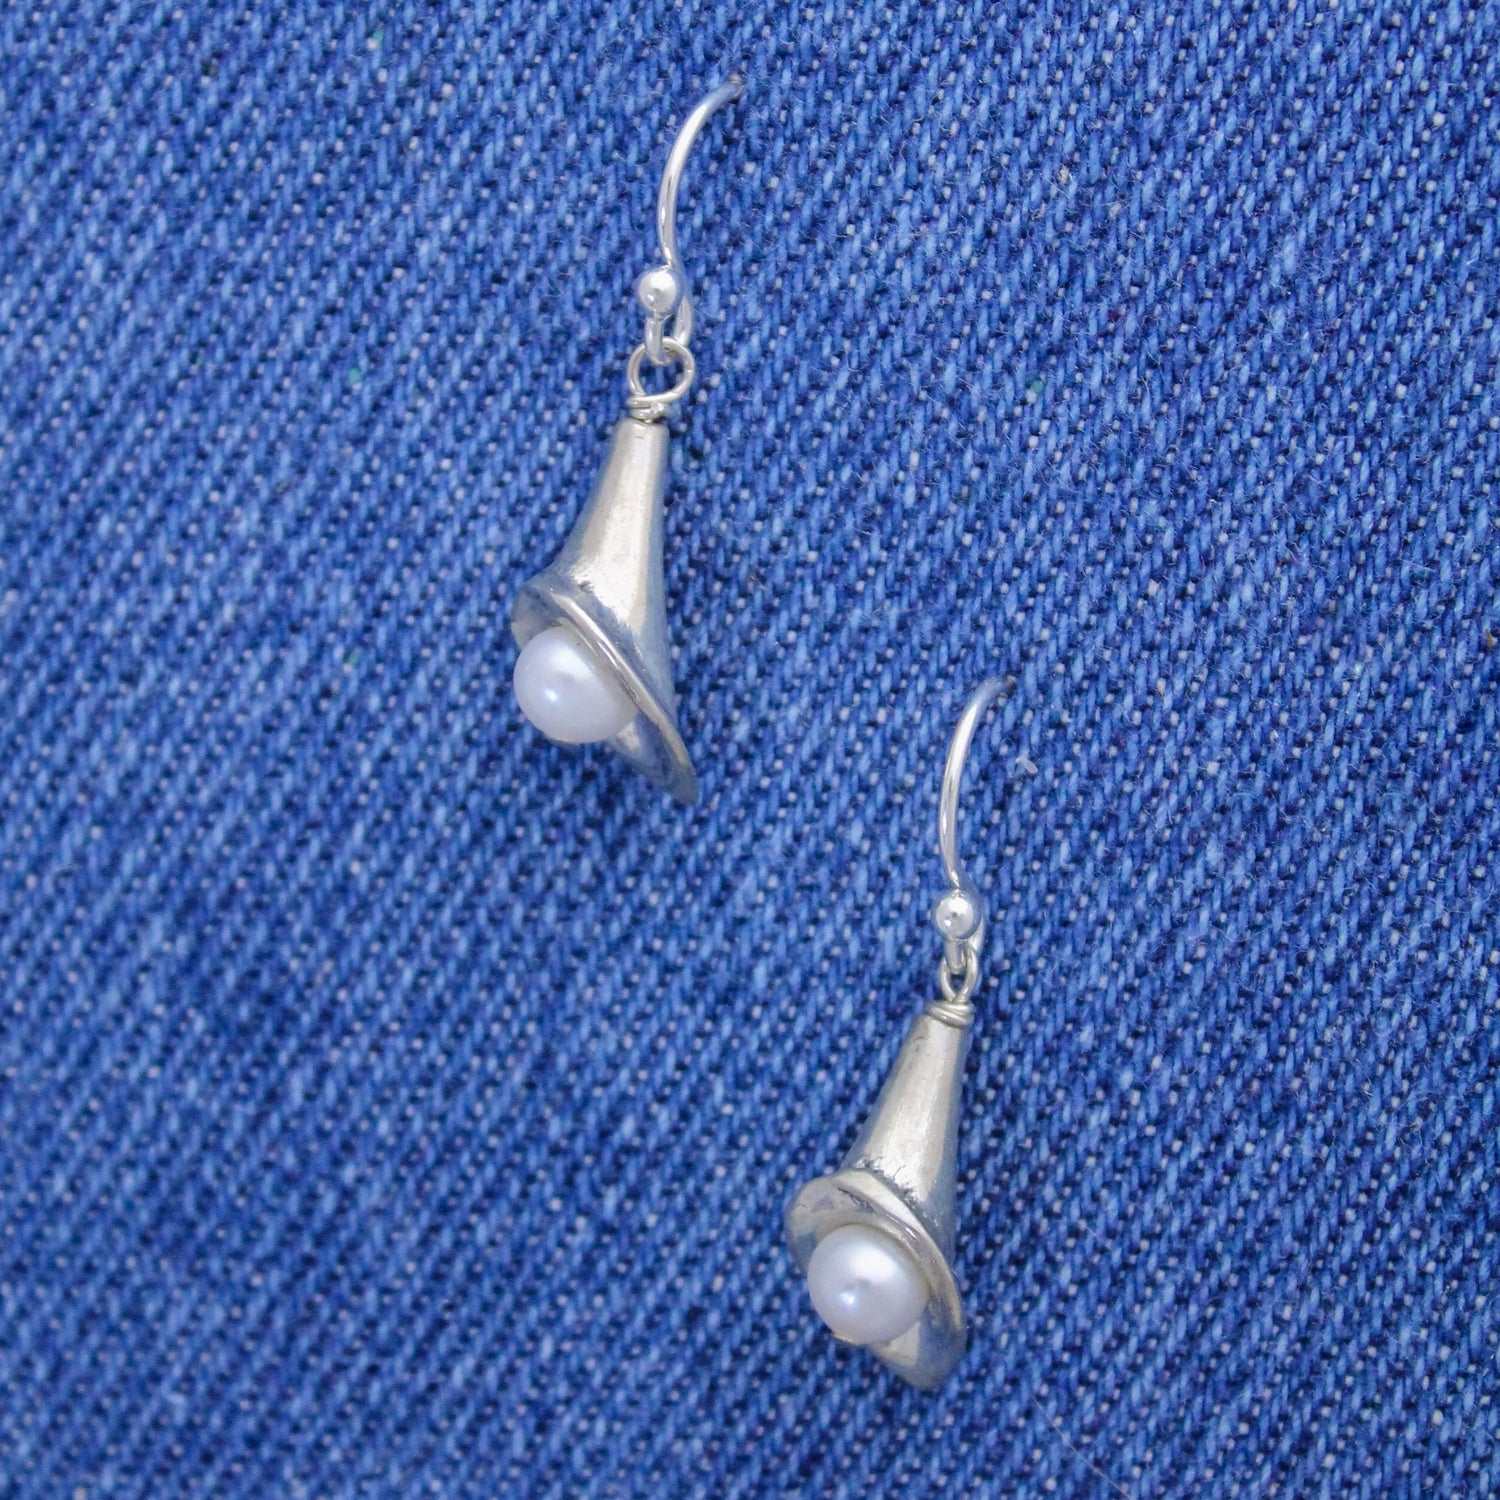 Classic Pearl Floral Earrings, Freshwater Pearl Earrings, White Pearl Earrings, Silver and Pearl Earrings, Bridesmaid Wedding Earrings